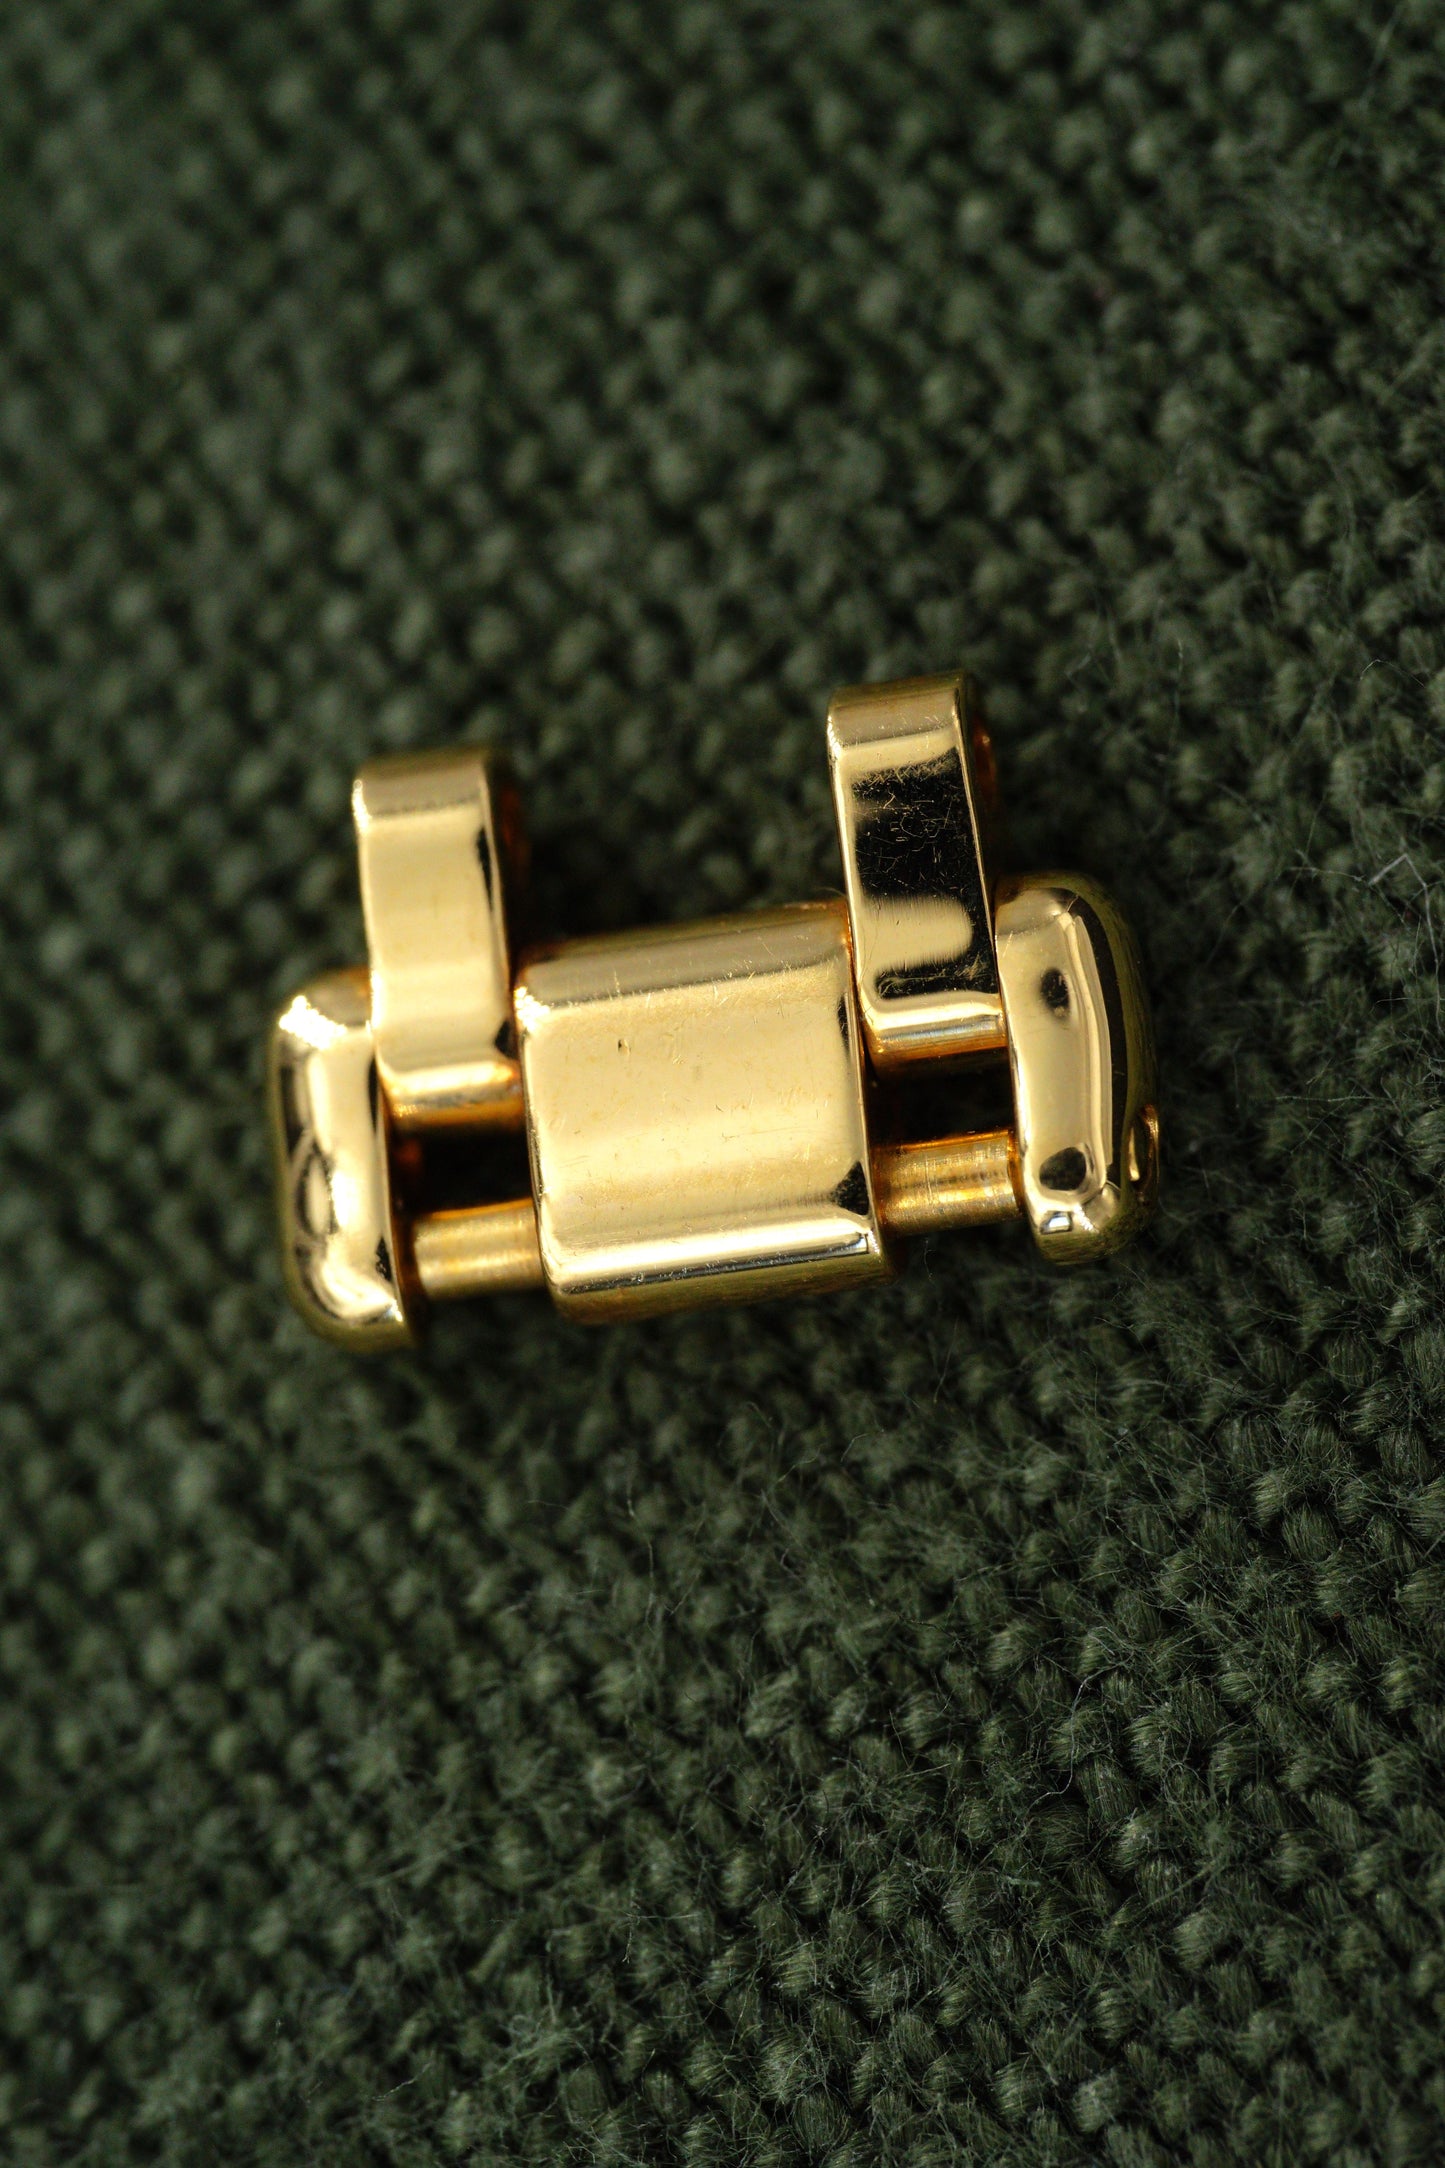 Rolex Pearlmaster Element | Glied | Link gold 18kt für 80318 13,2 mm Länge 5,6 mm